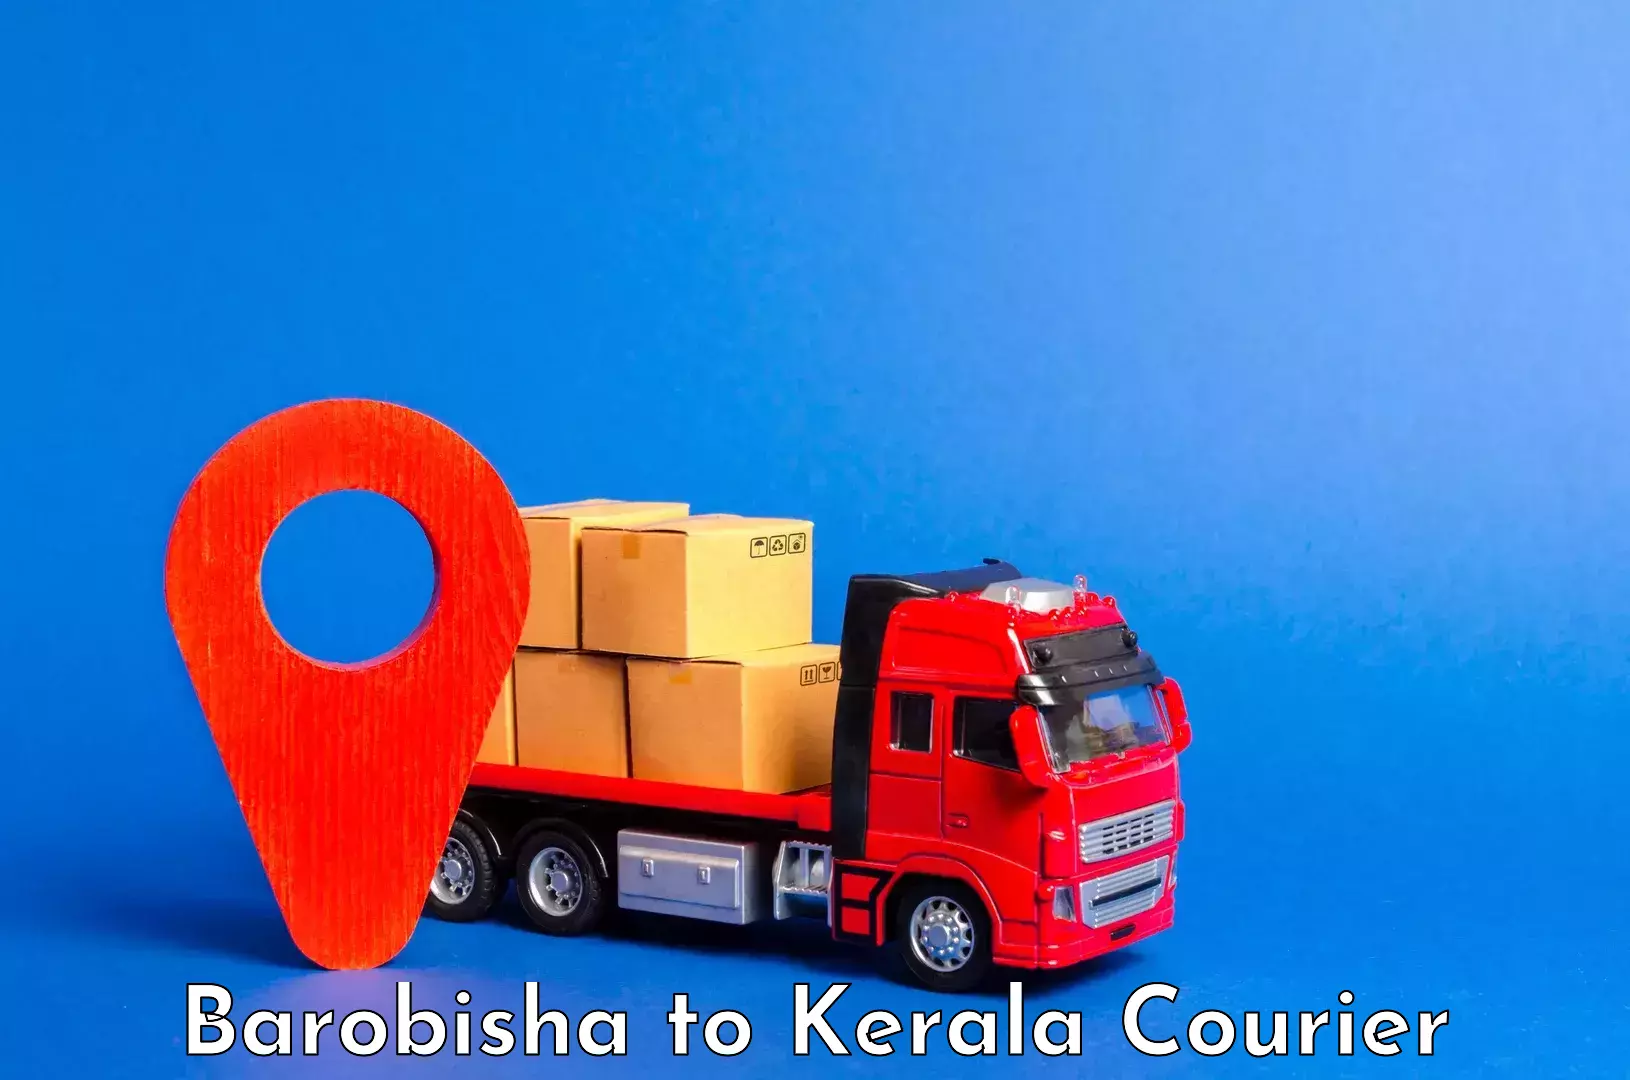 Luggage transport solutions Barobisha to Mahe